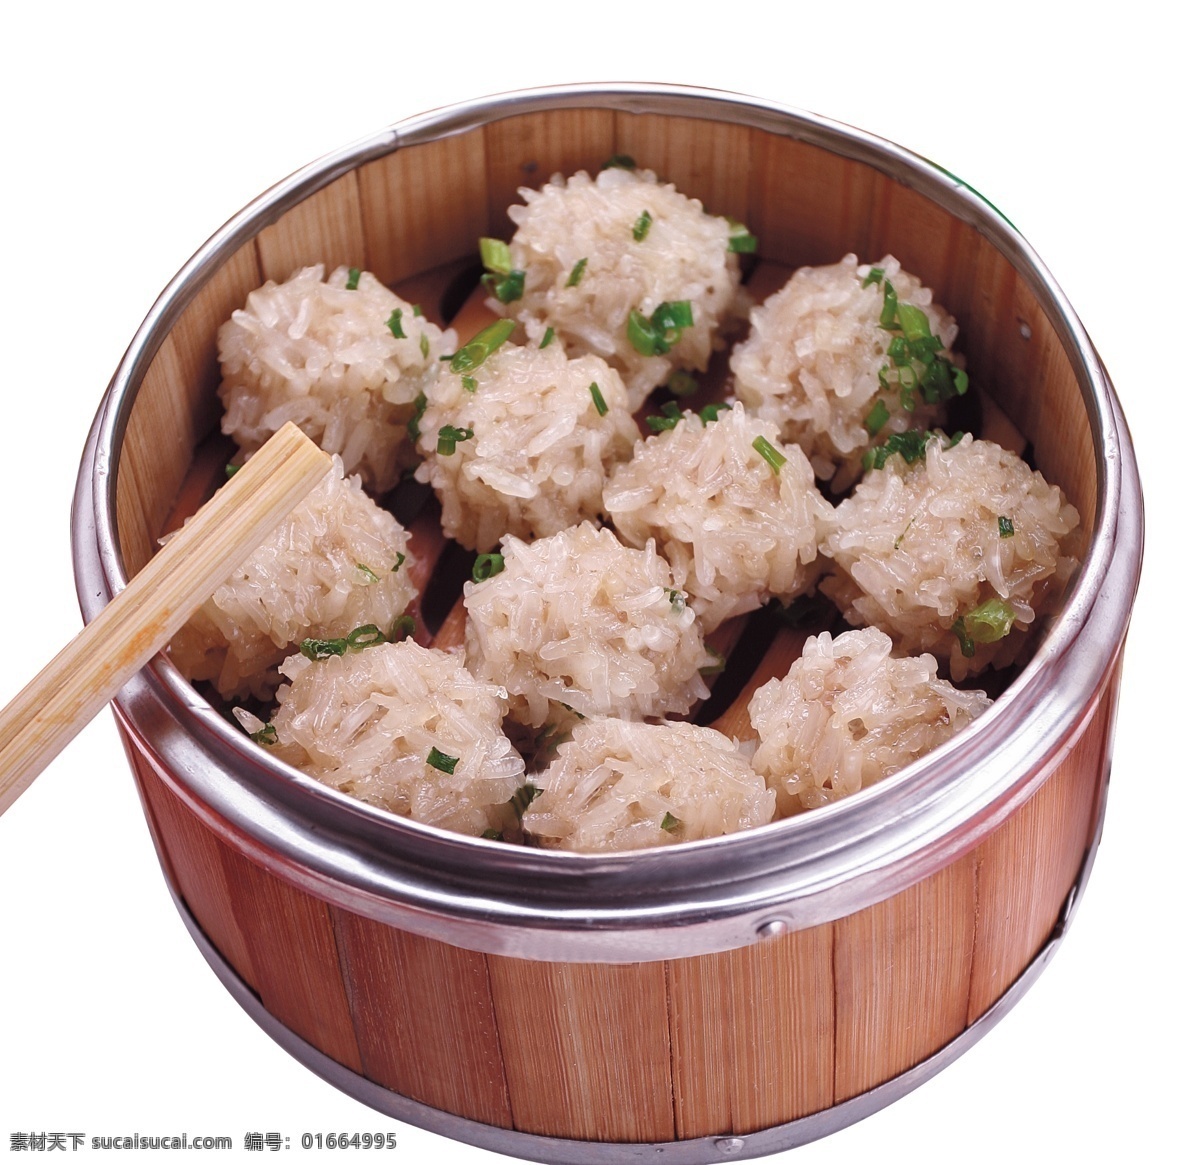 糯米团子 竹屉 一屉团子 葱花 筷子 食品类 分层